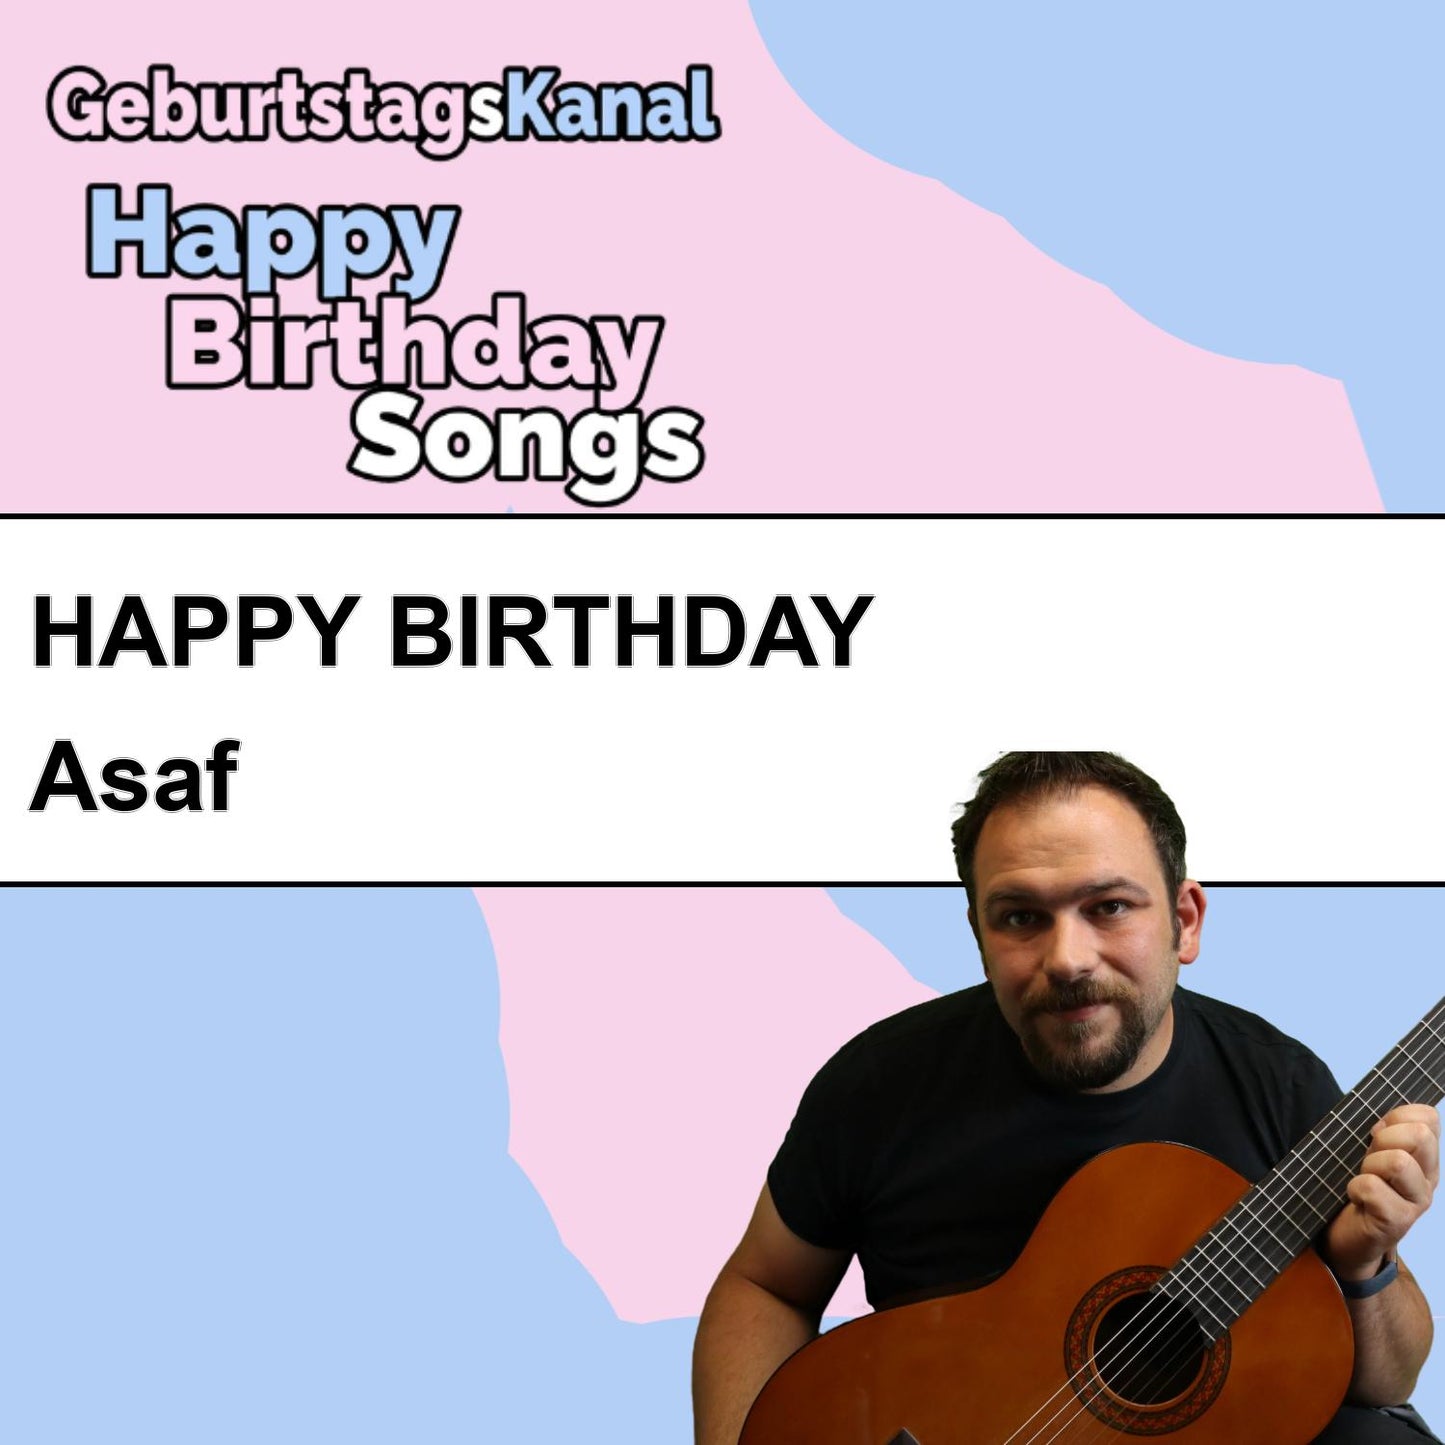 Produktbild Happy Birthday to you Asaf mit Wunschgrußbotschaft